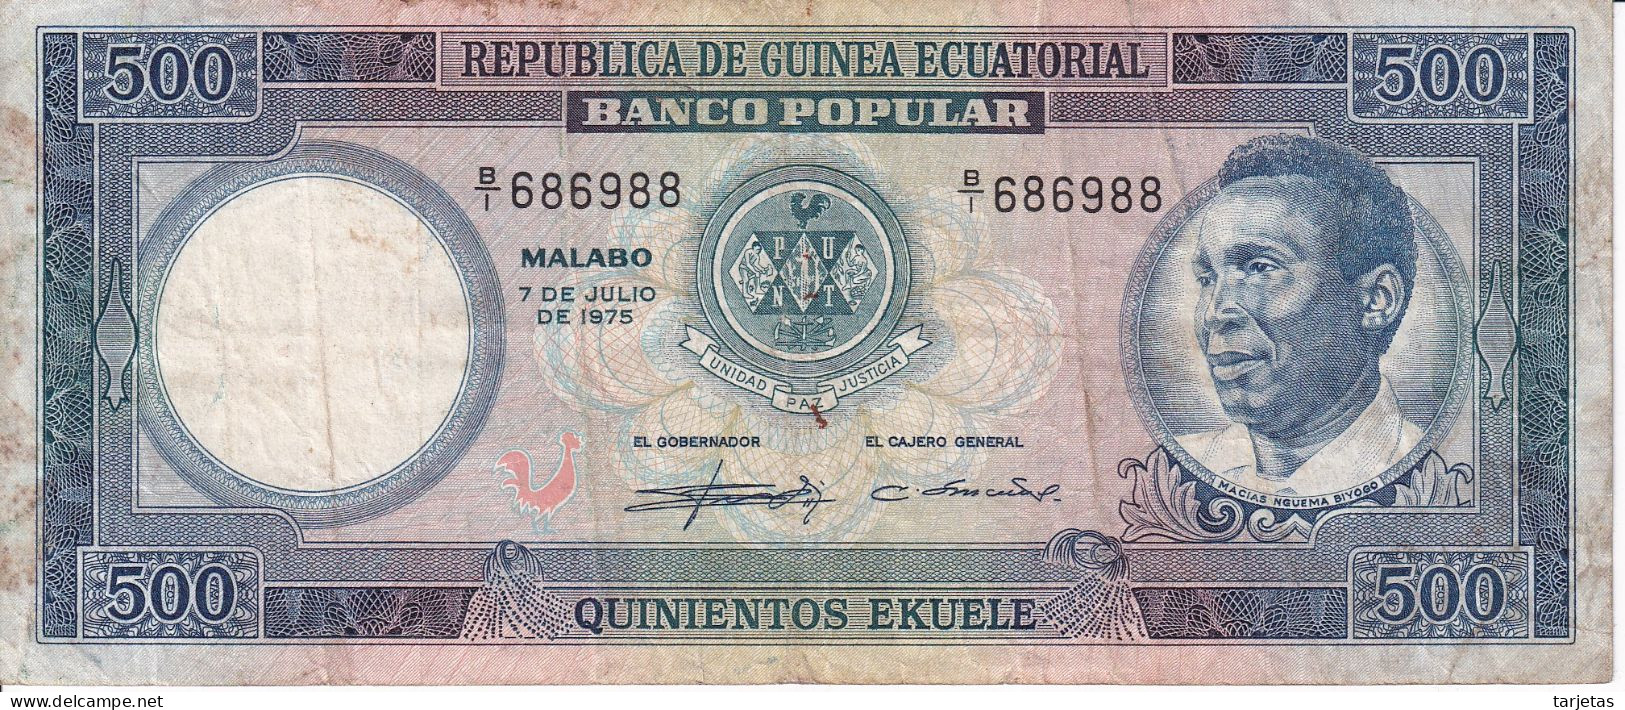 BILLETE DE GUINEA ECUATORIAL DE 500 EKUELE DEL AÑO 1975  (BANKNOTE) - Guinée Equatoriale